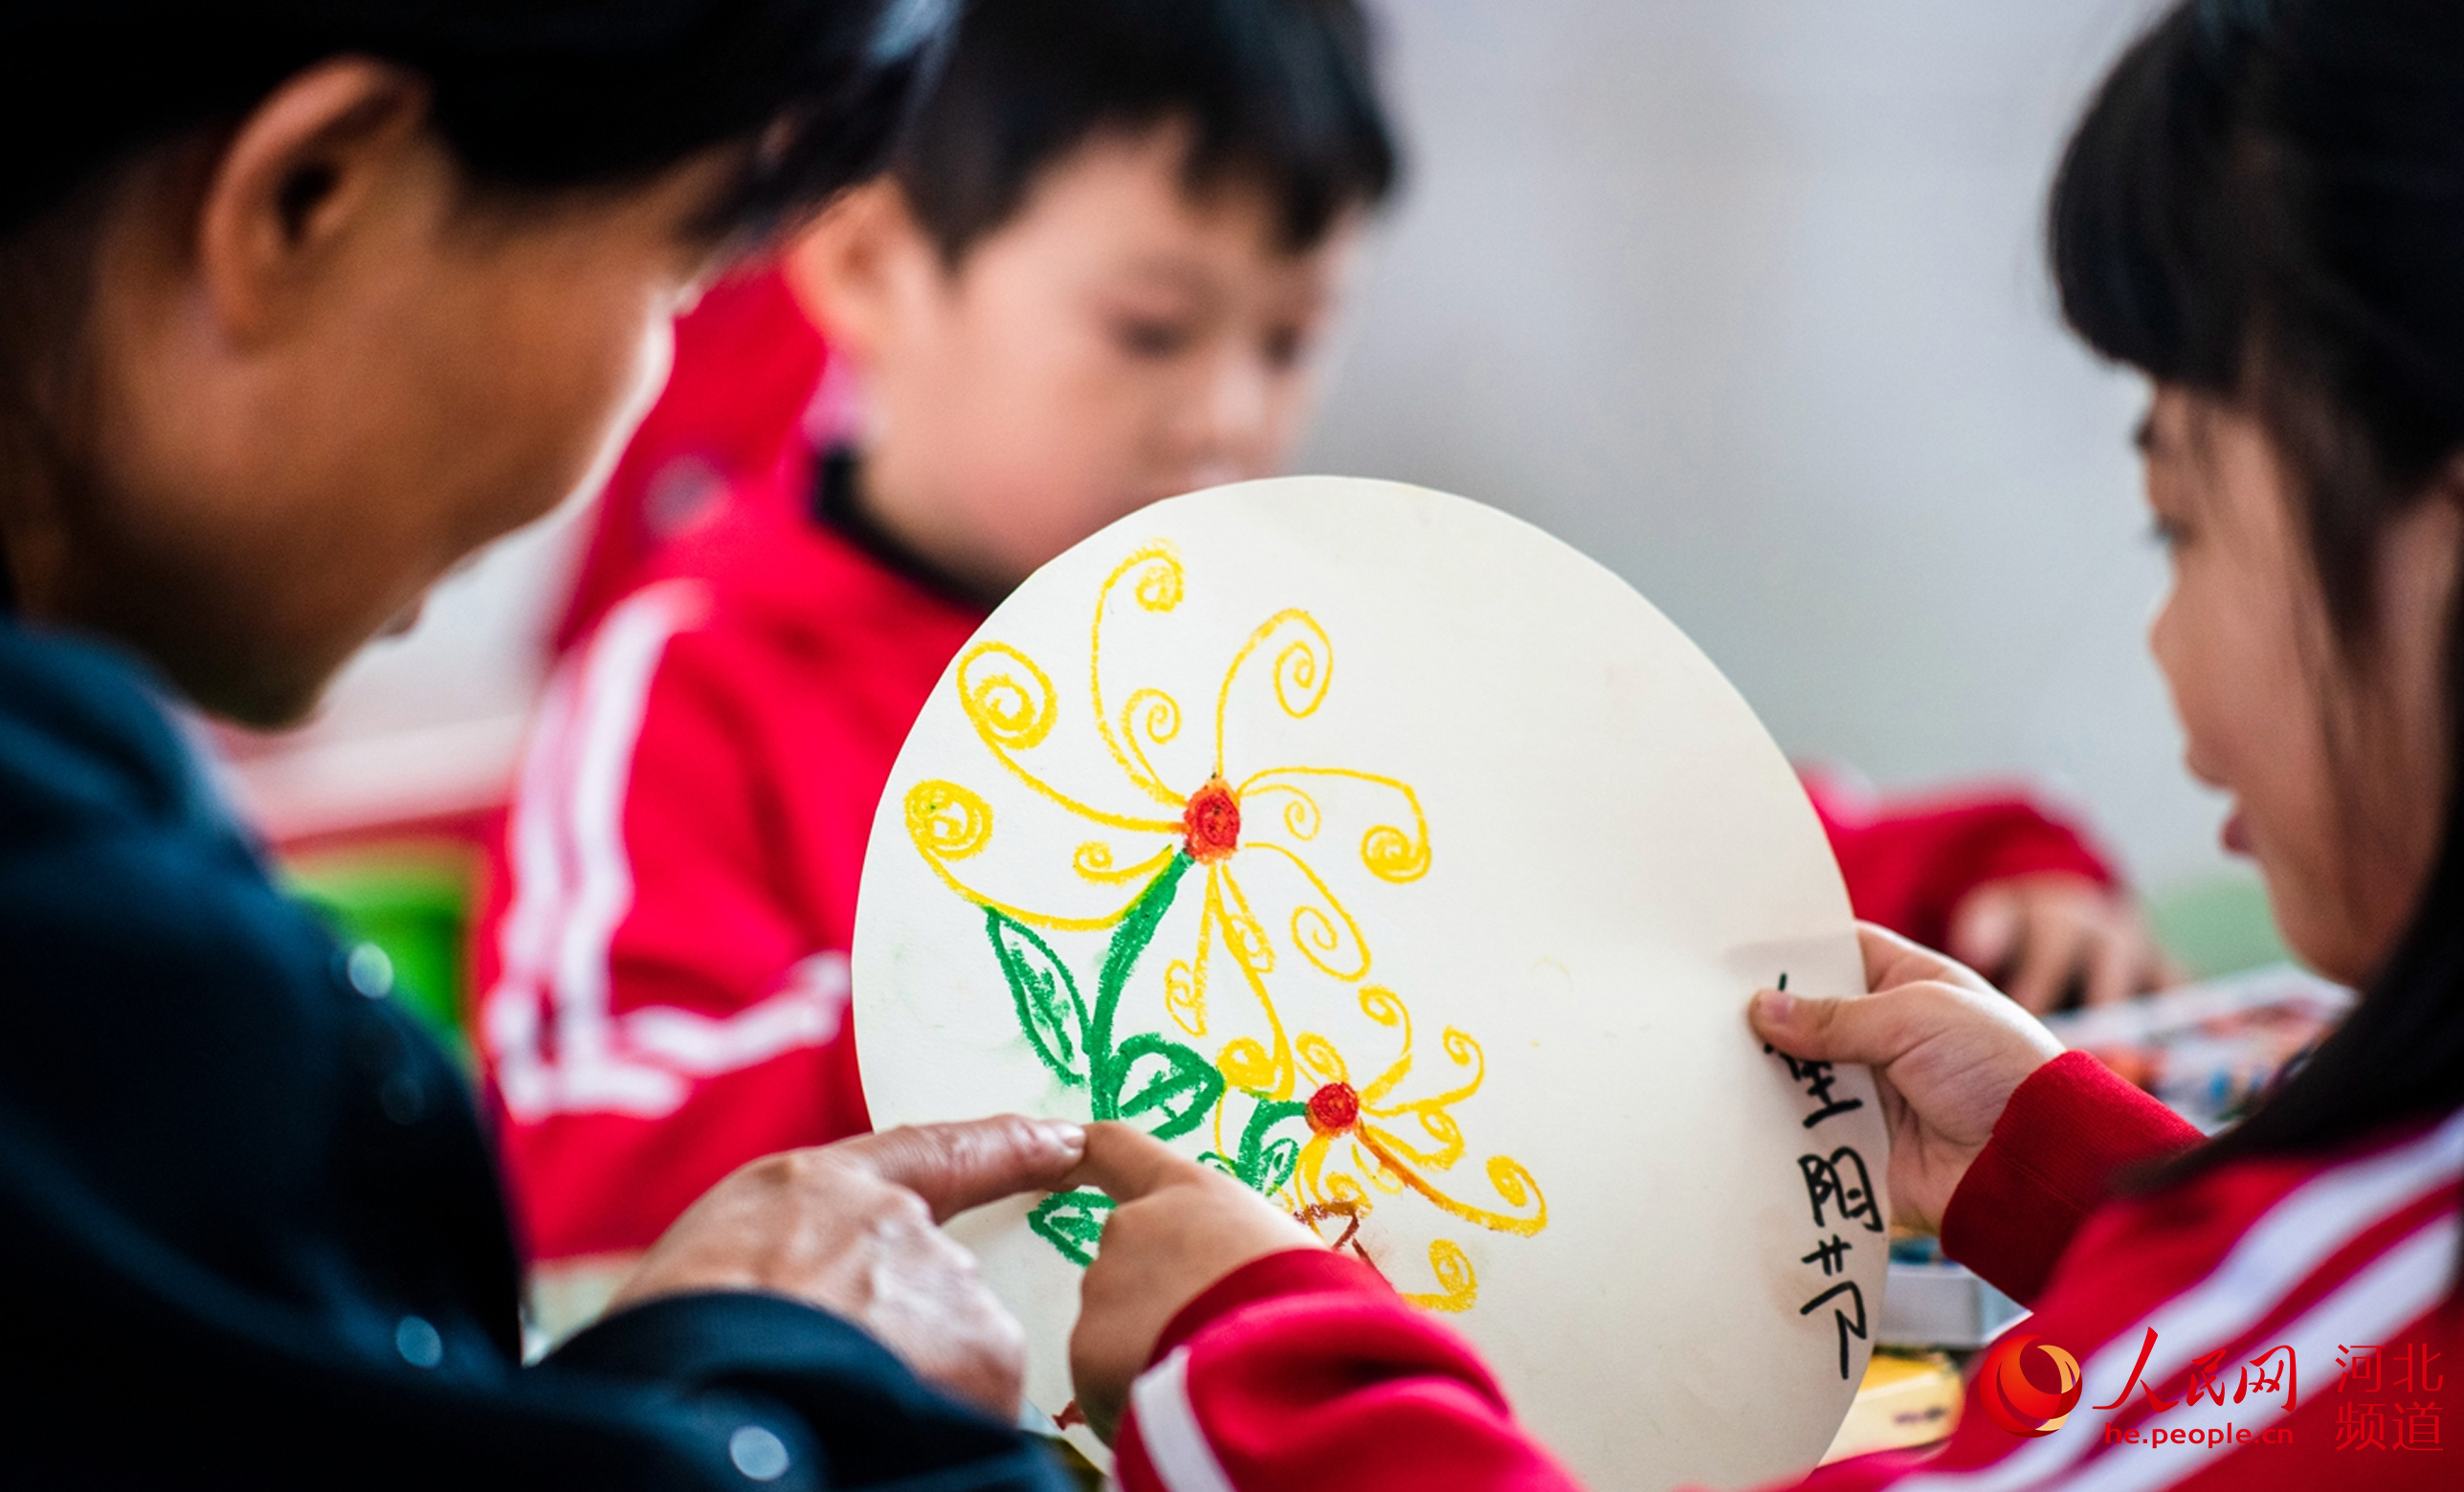 邢台市柏乡县第二幼儿园的孩子们为老人画菊花、做纸菊花，祝老人们幸福安康、重阳快乐。 栗建兵摄